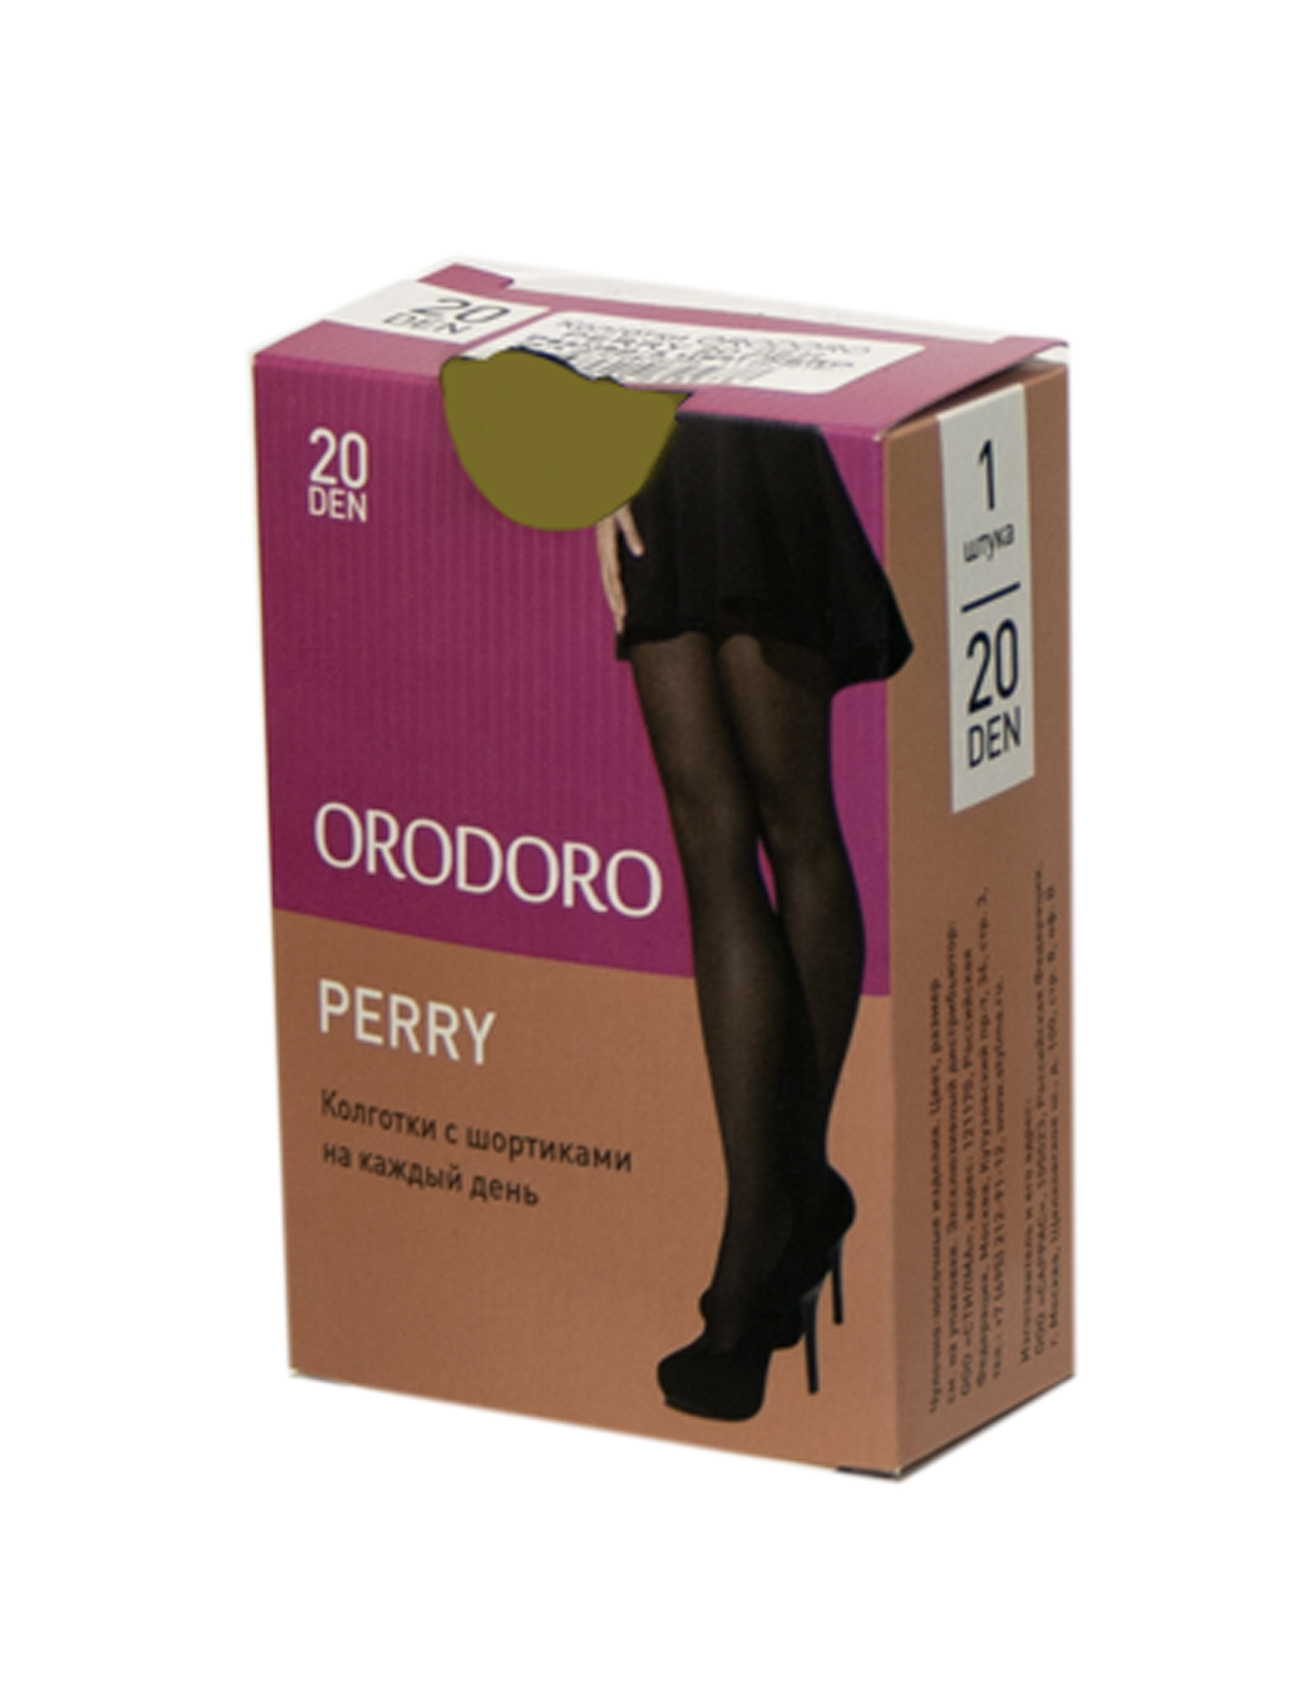  ORODORO (Perry) 20 den,   (glace), -  3